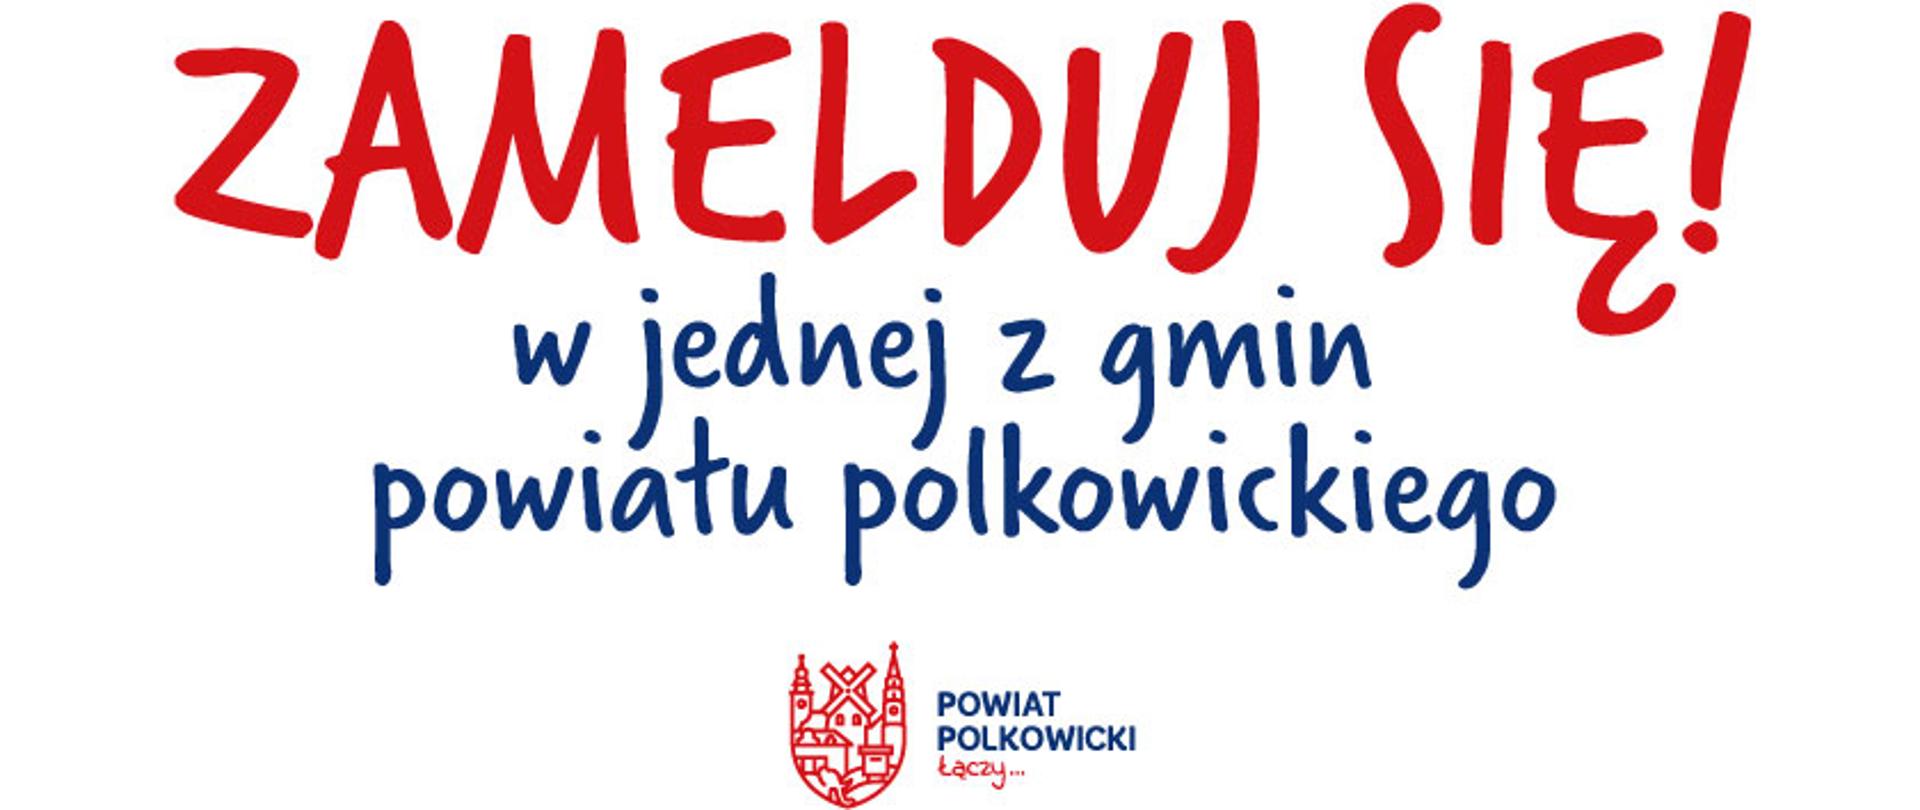 Plakat informujący o zameldowaniu się w powiecie polkowickim z logo powiatu